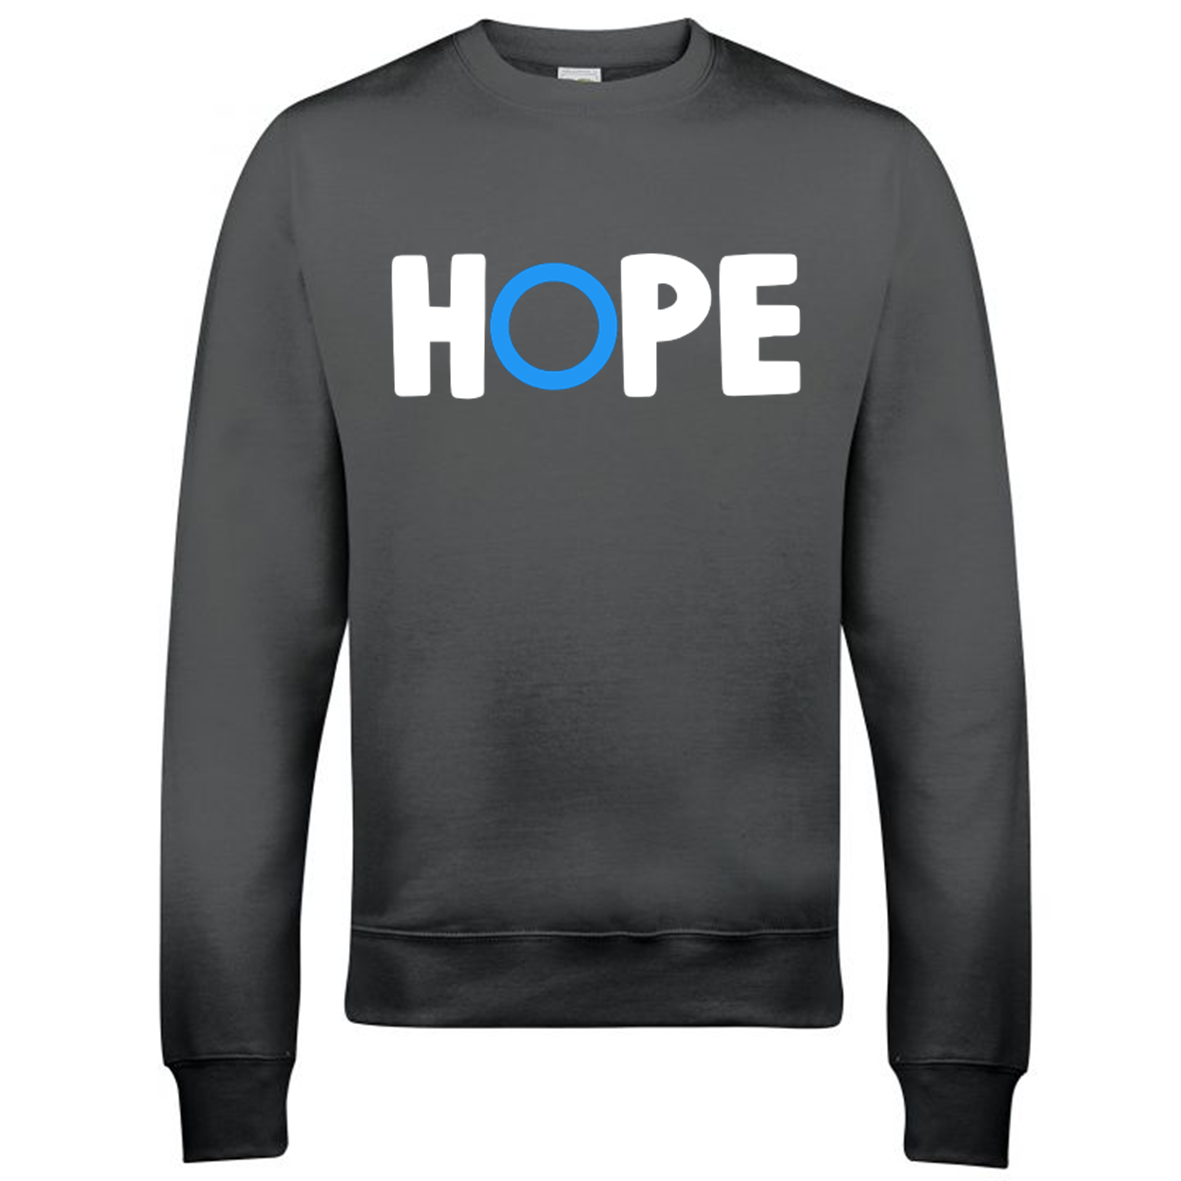 Hope Sweatshirt